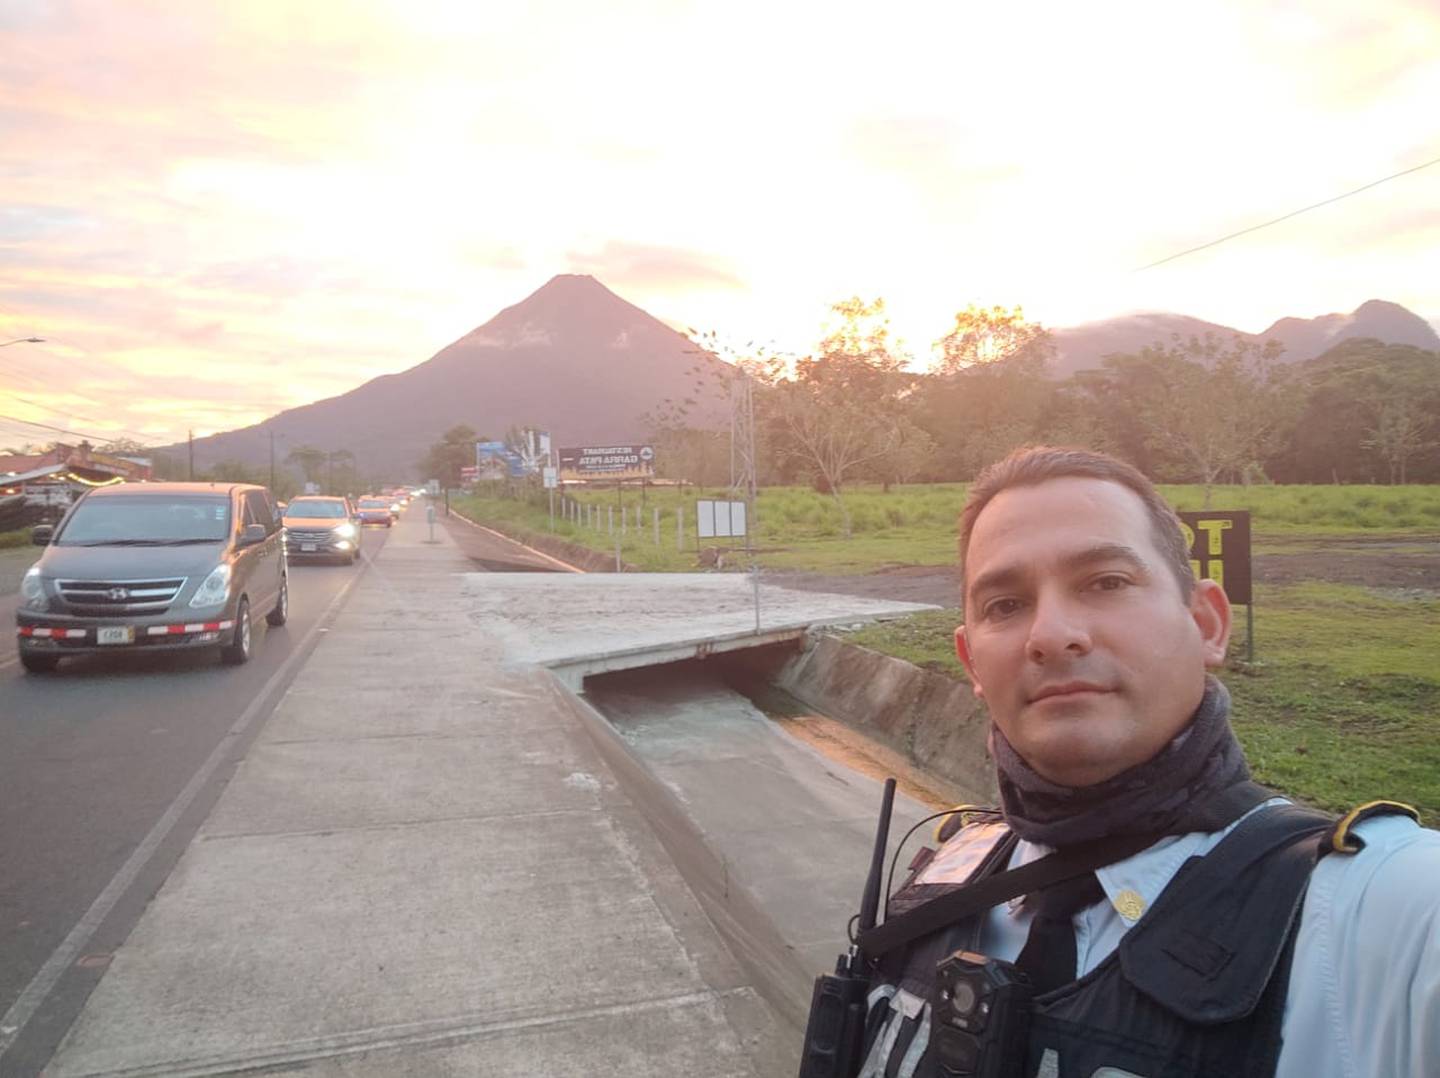 Joiner Ulate, oficial de tránsito atropellado por conductor en Los Chiles. Foto cortesía.